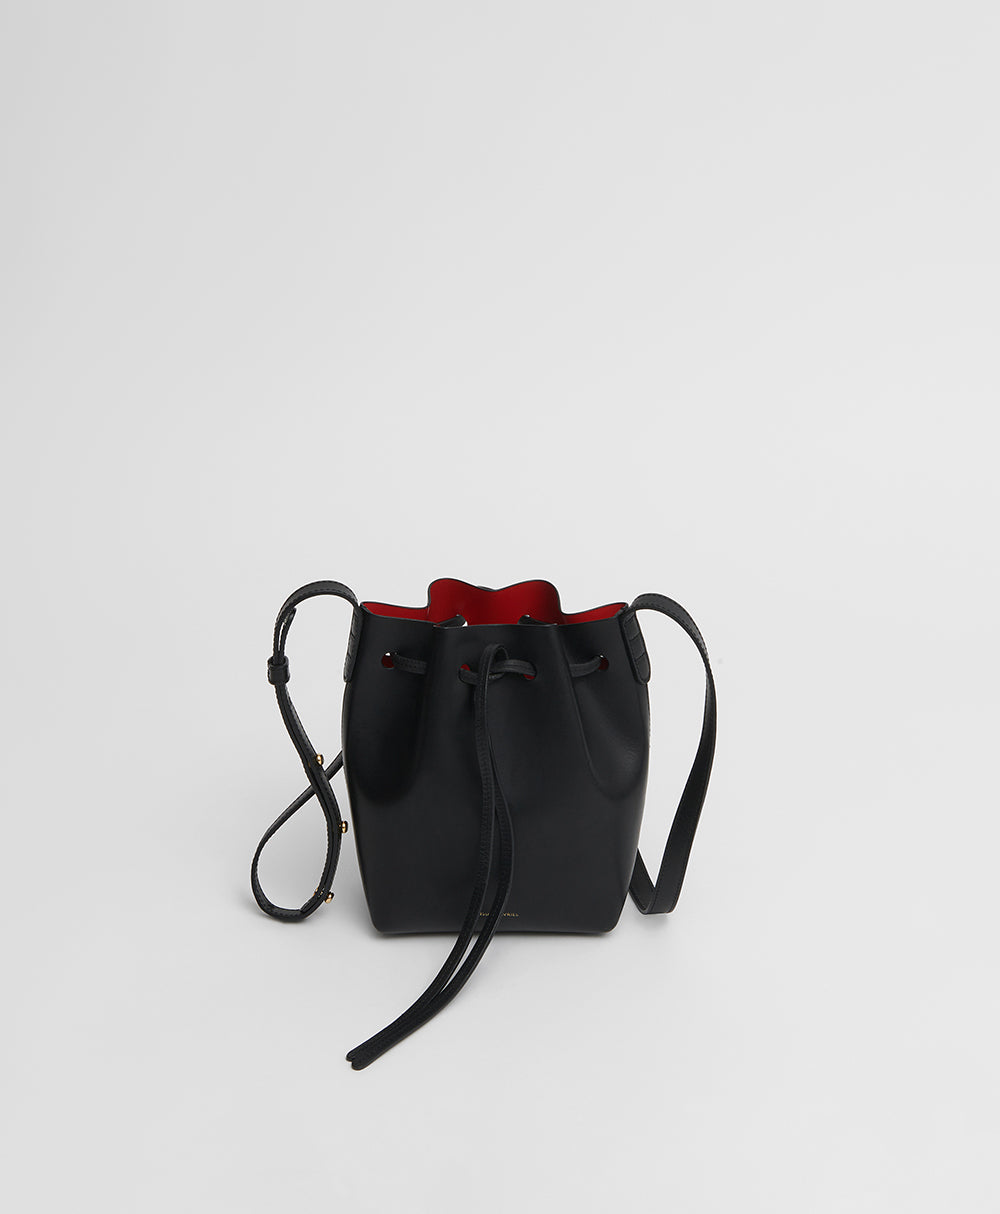 Black/Orange/Pink Handbag Strap - FINAL SALE